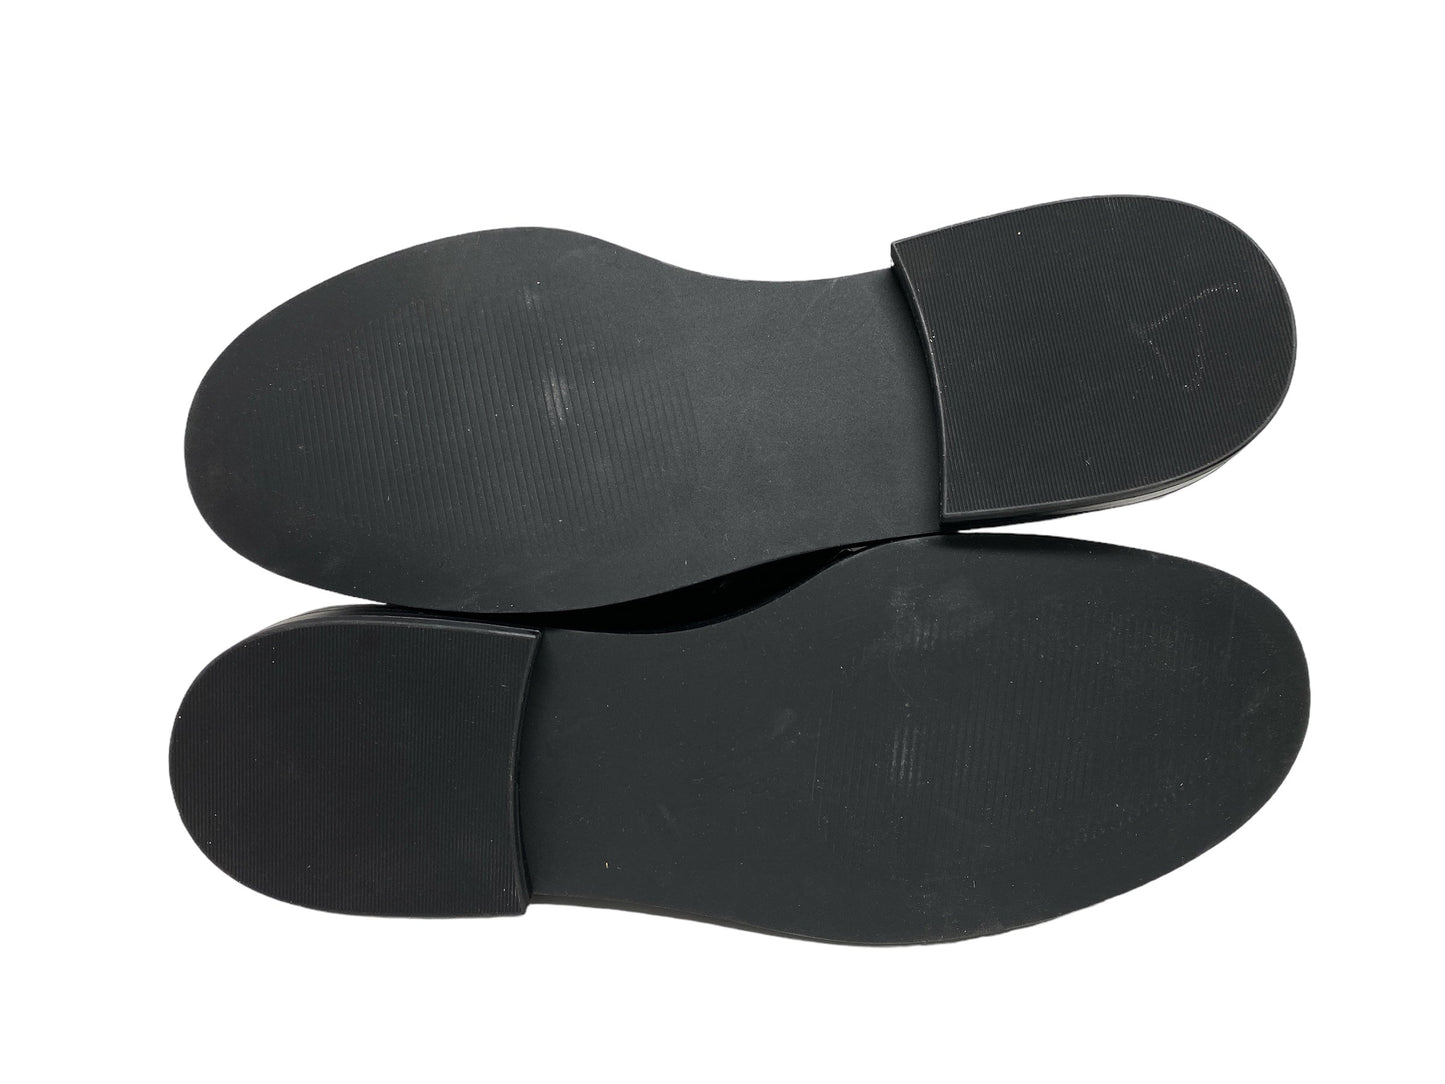 Black Shoes Flats Loft, Size 9